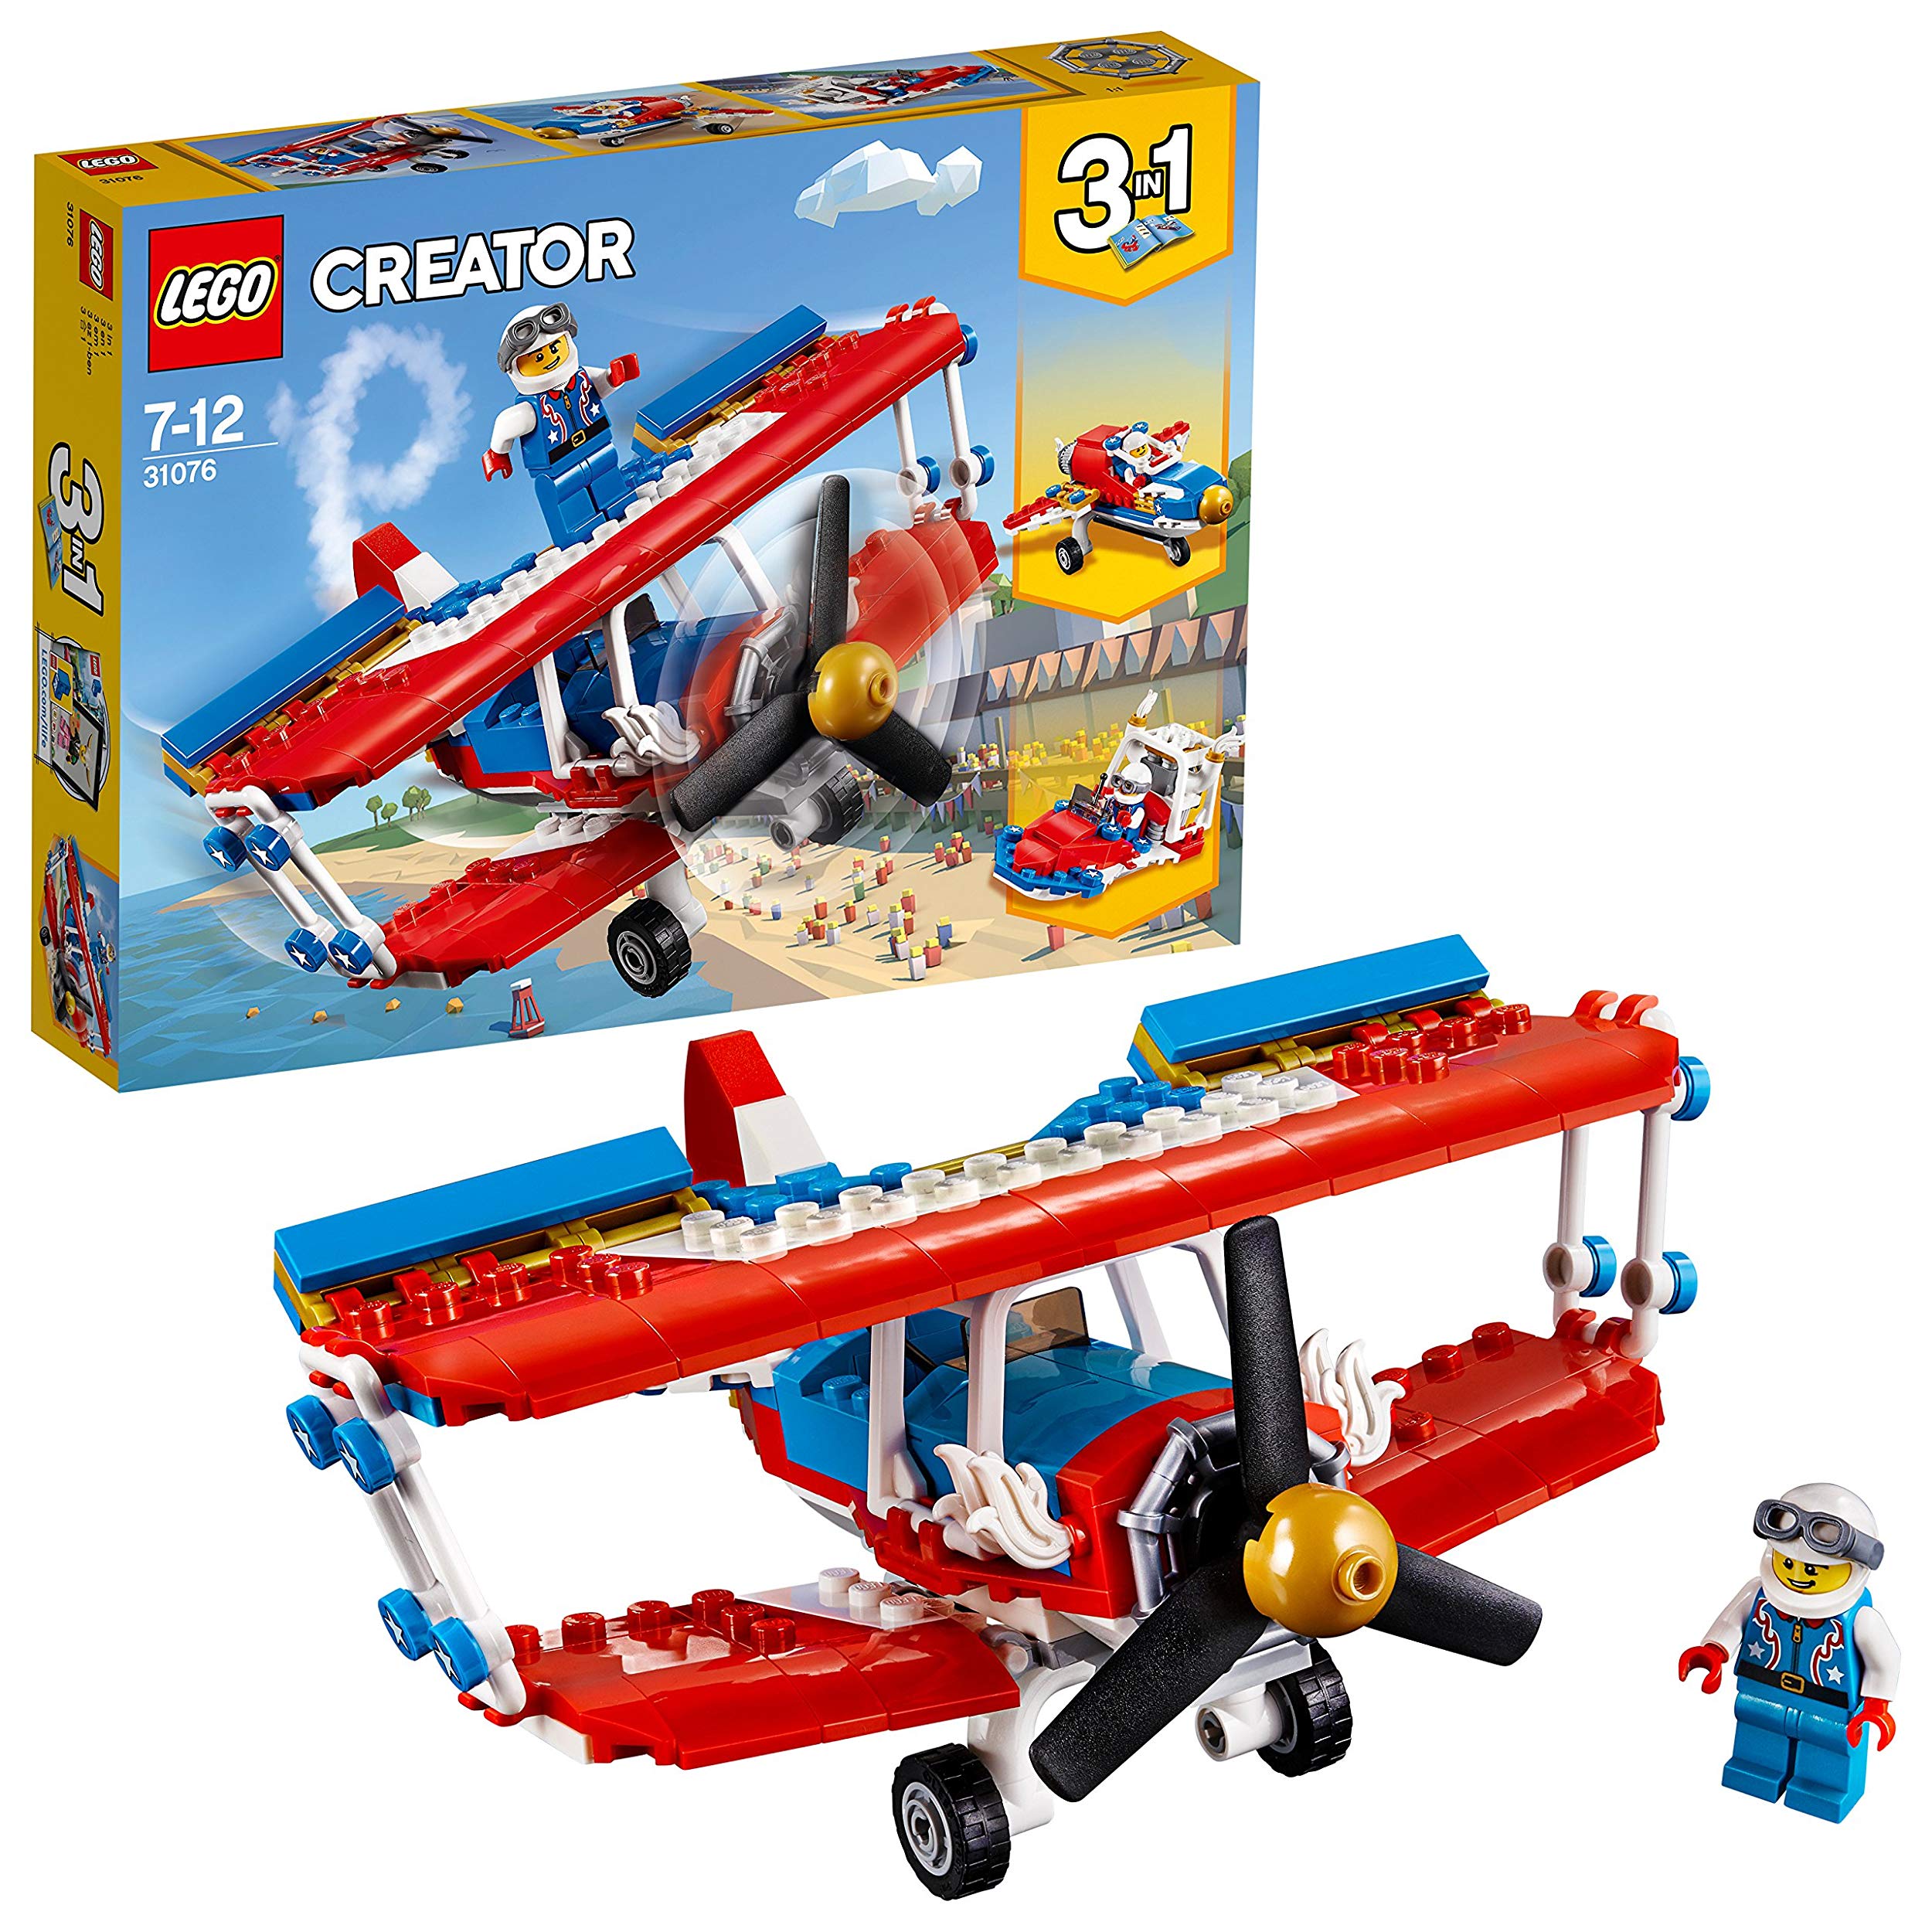 Lego Tollk Hner Aviator Construction Toy